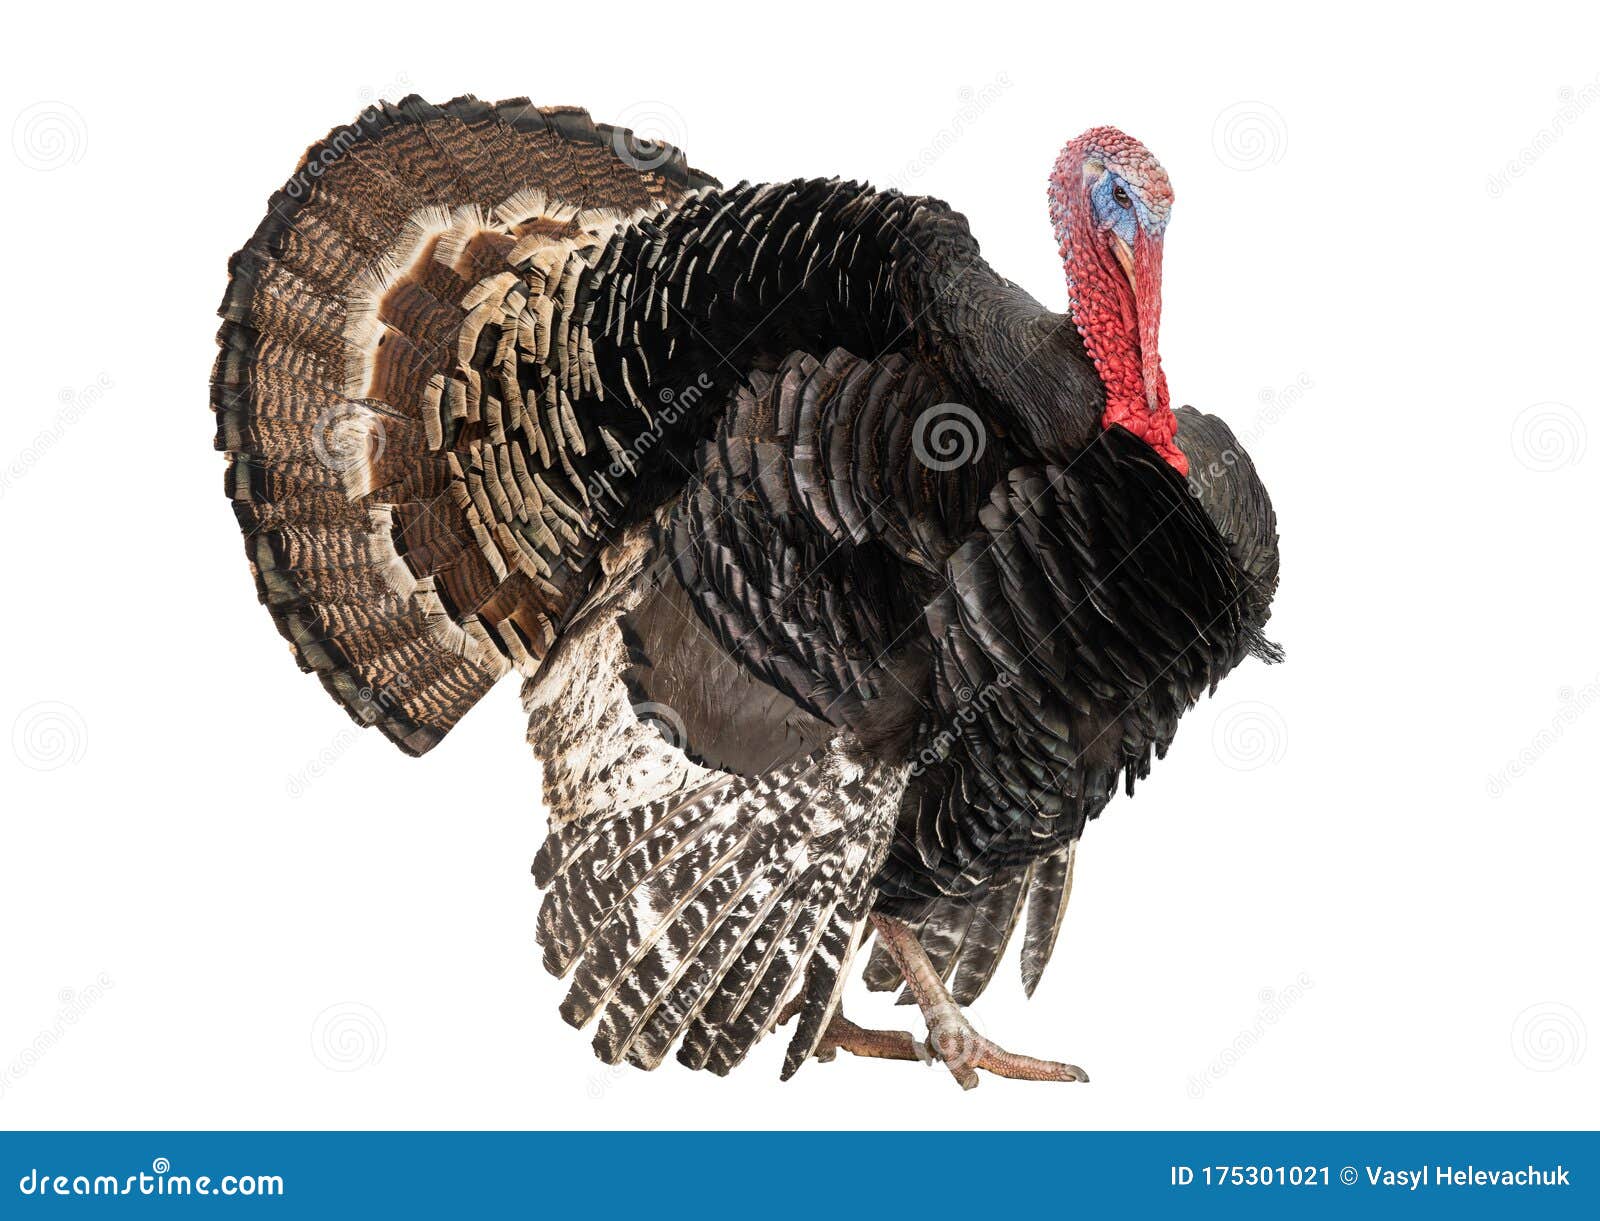 bronze turkey  on a white background